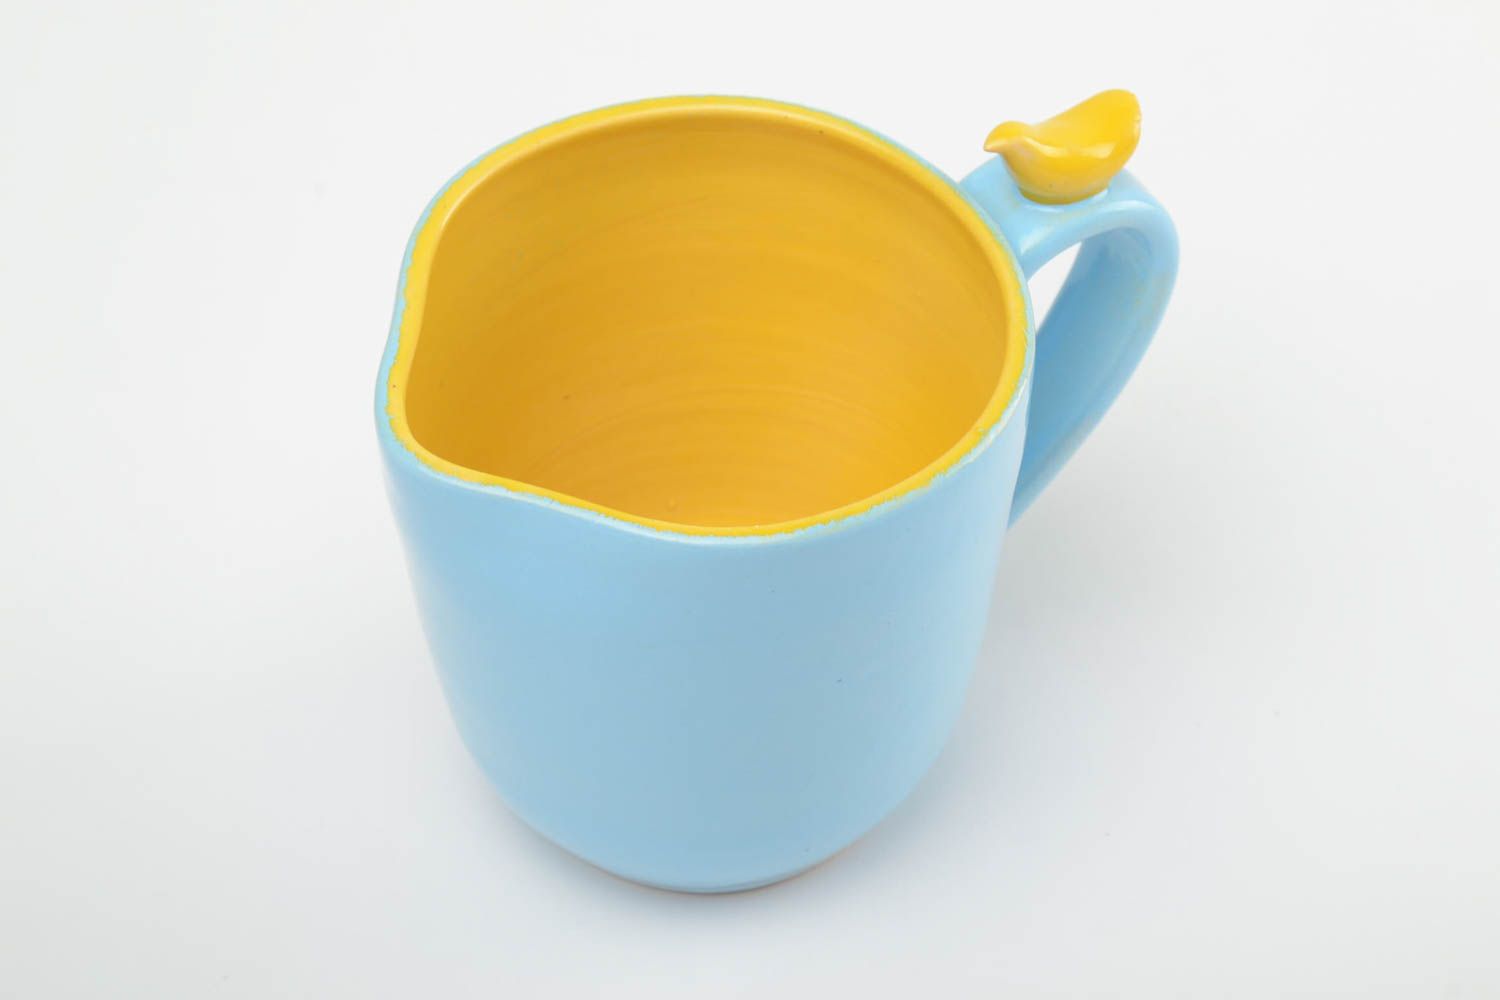 Глиняная чашка ручной работы расписанная глазурью и эмалью 400 мл желто-голубая фото 2